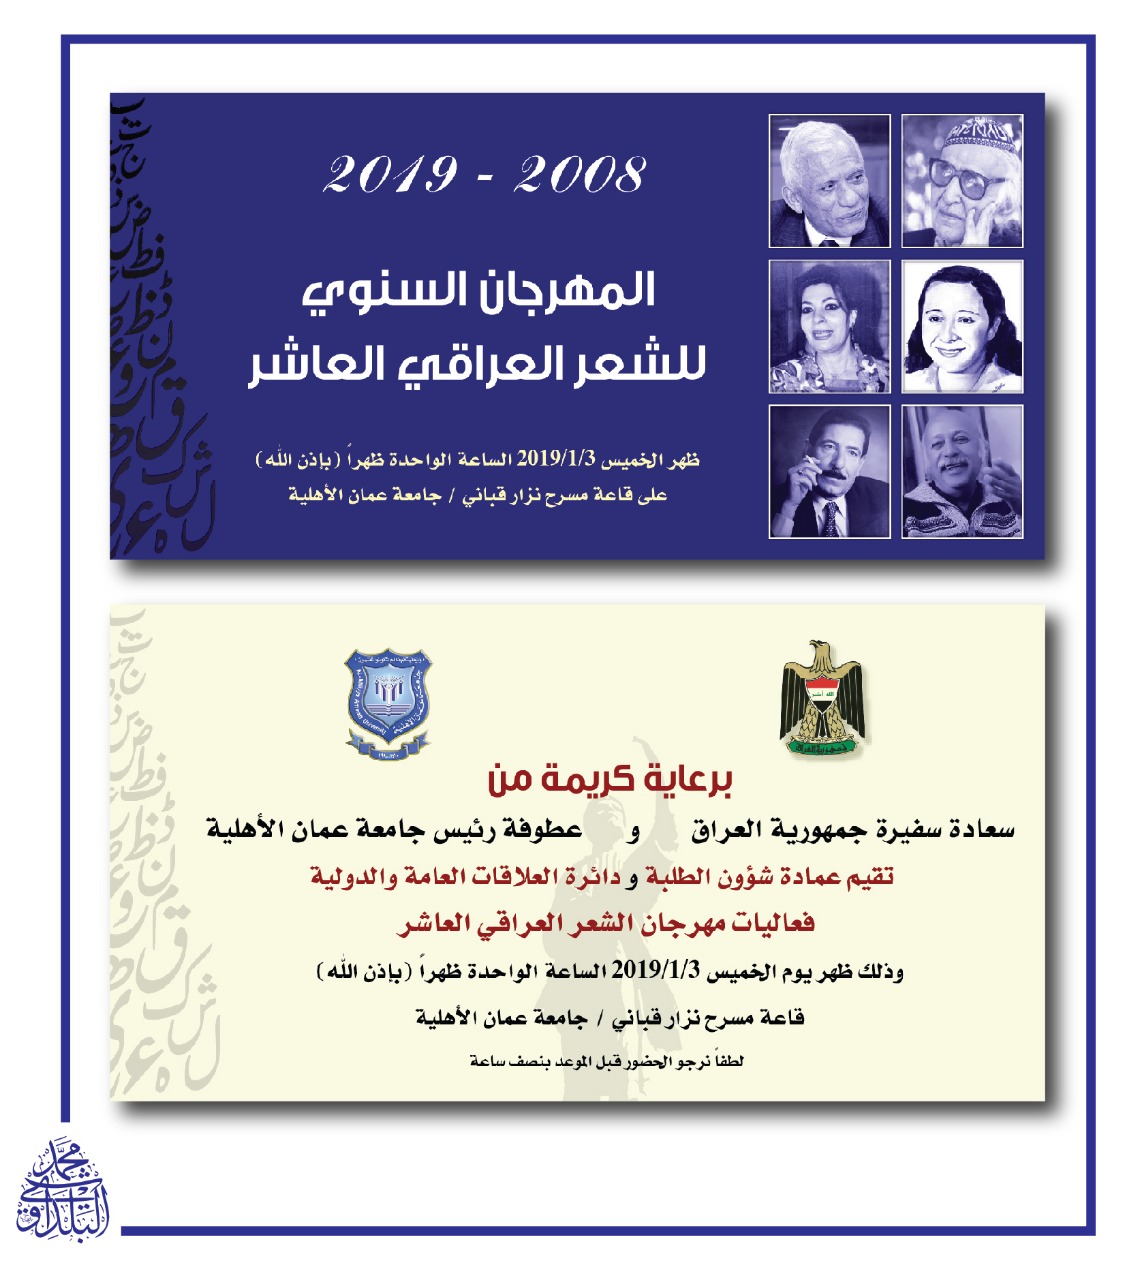 المهرجان السنوي العاشر للشعر العراقي في “عمان الاهلية ” غدا الخميس